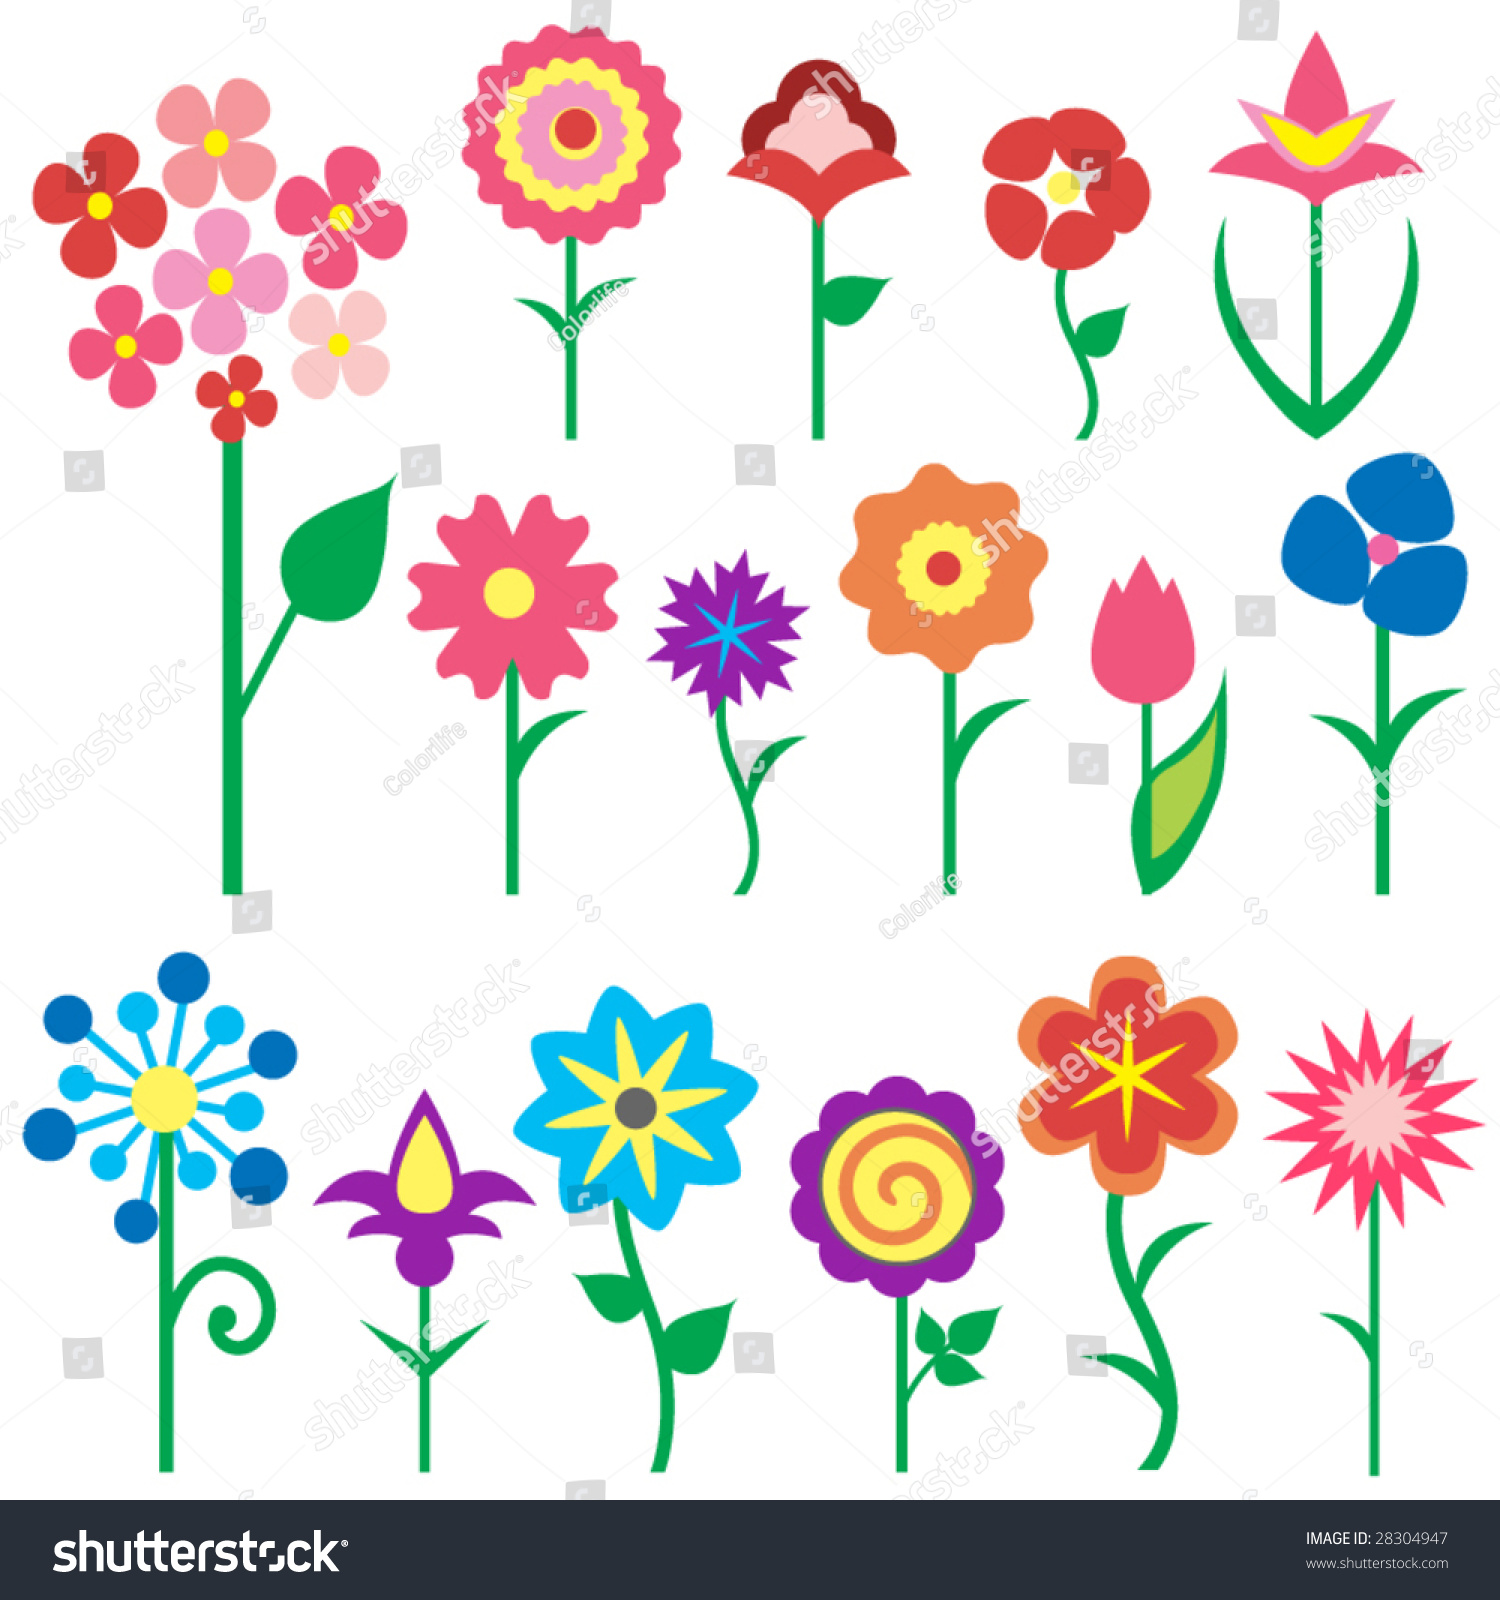 Flower Icons Stock Vector 28304947 - Shutterstock